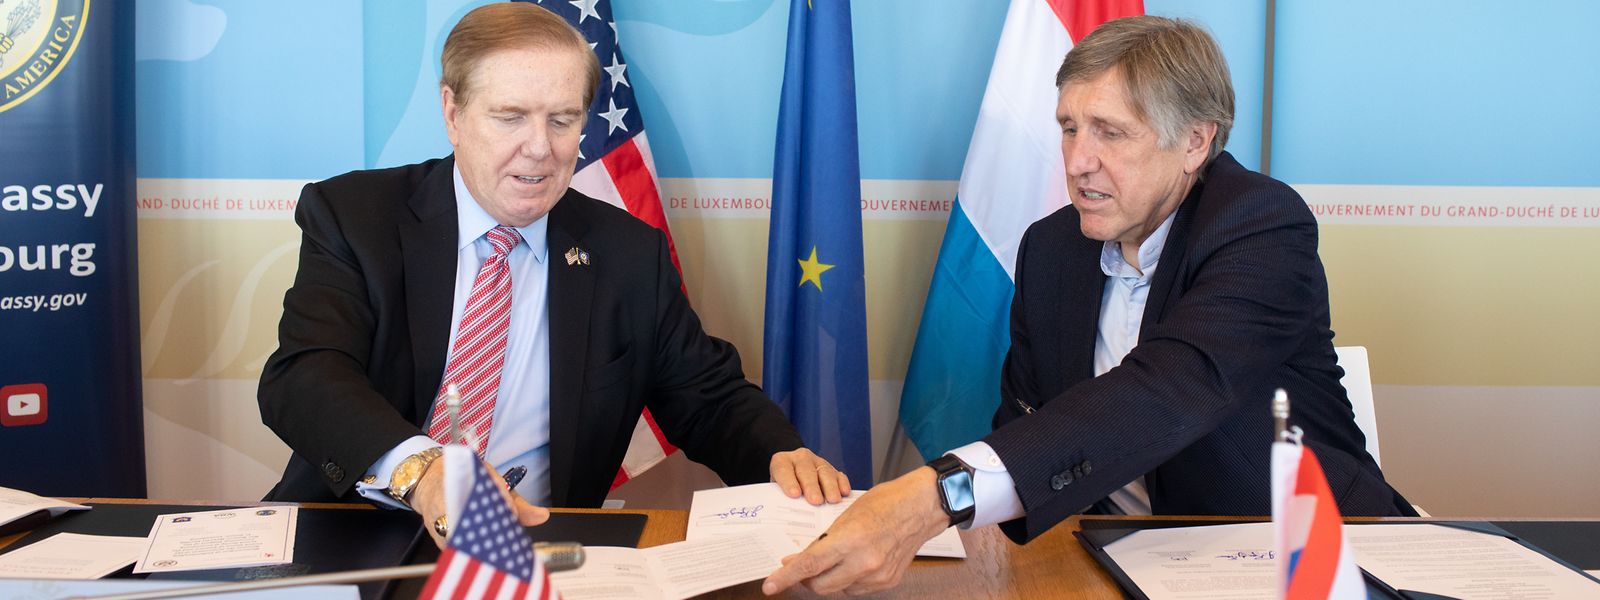 L'ambassadeur américain et le ministre de la Défense partagent la même volonté de développement du site de Sanem.